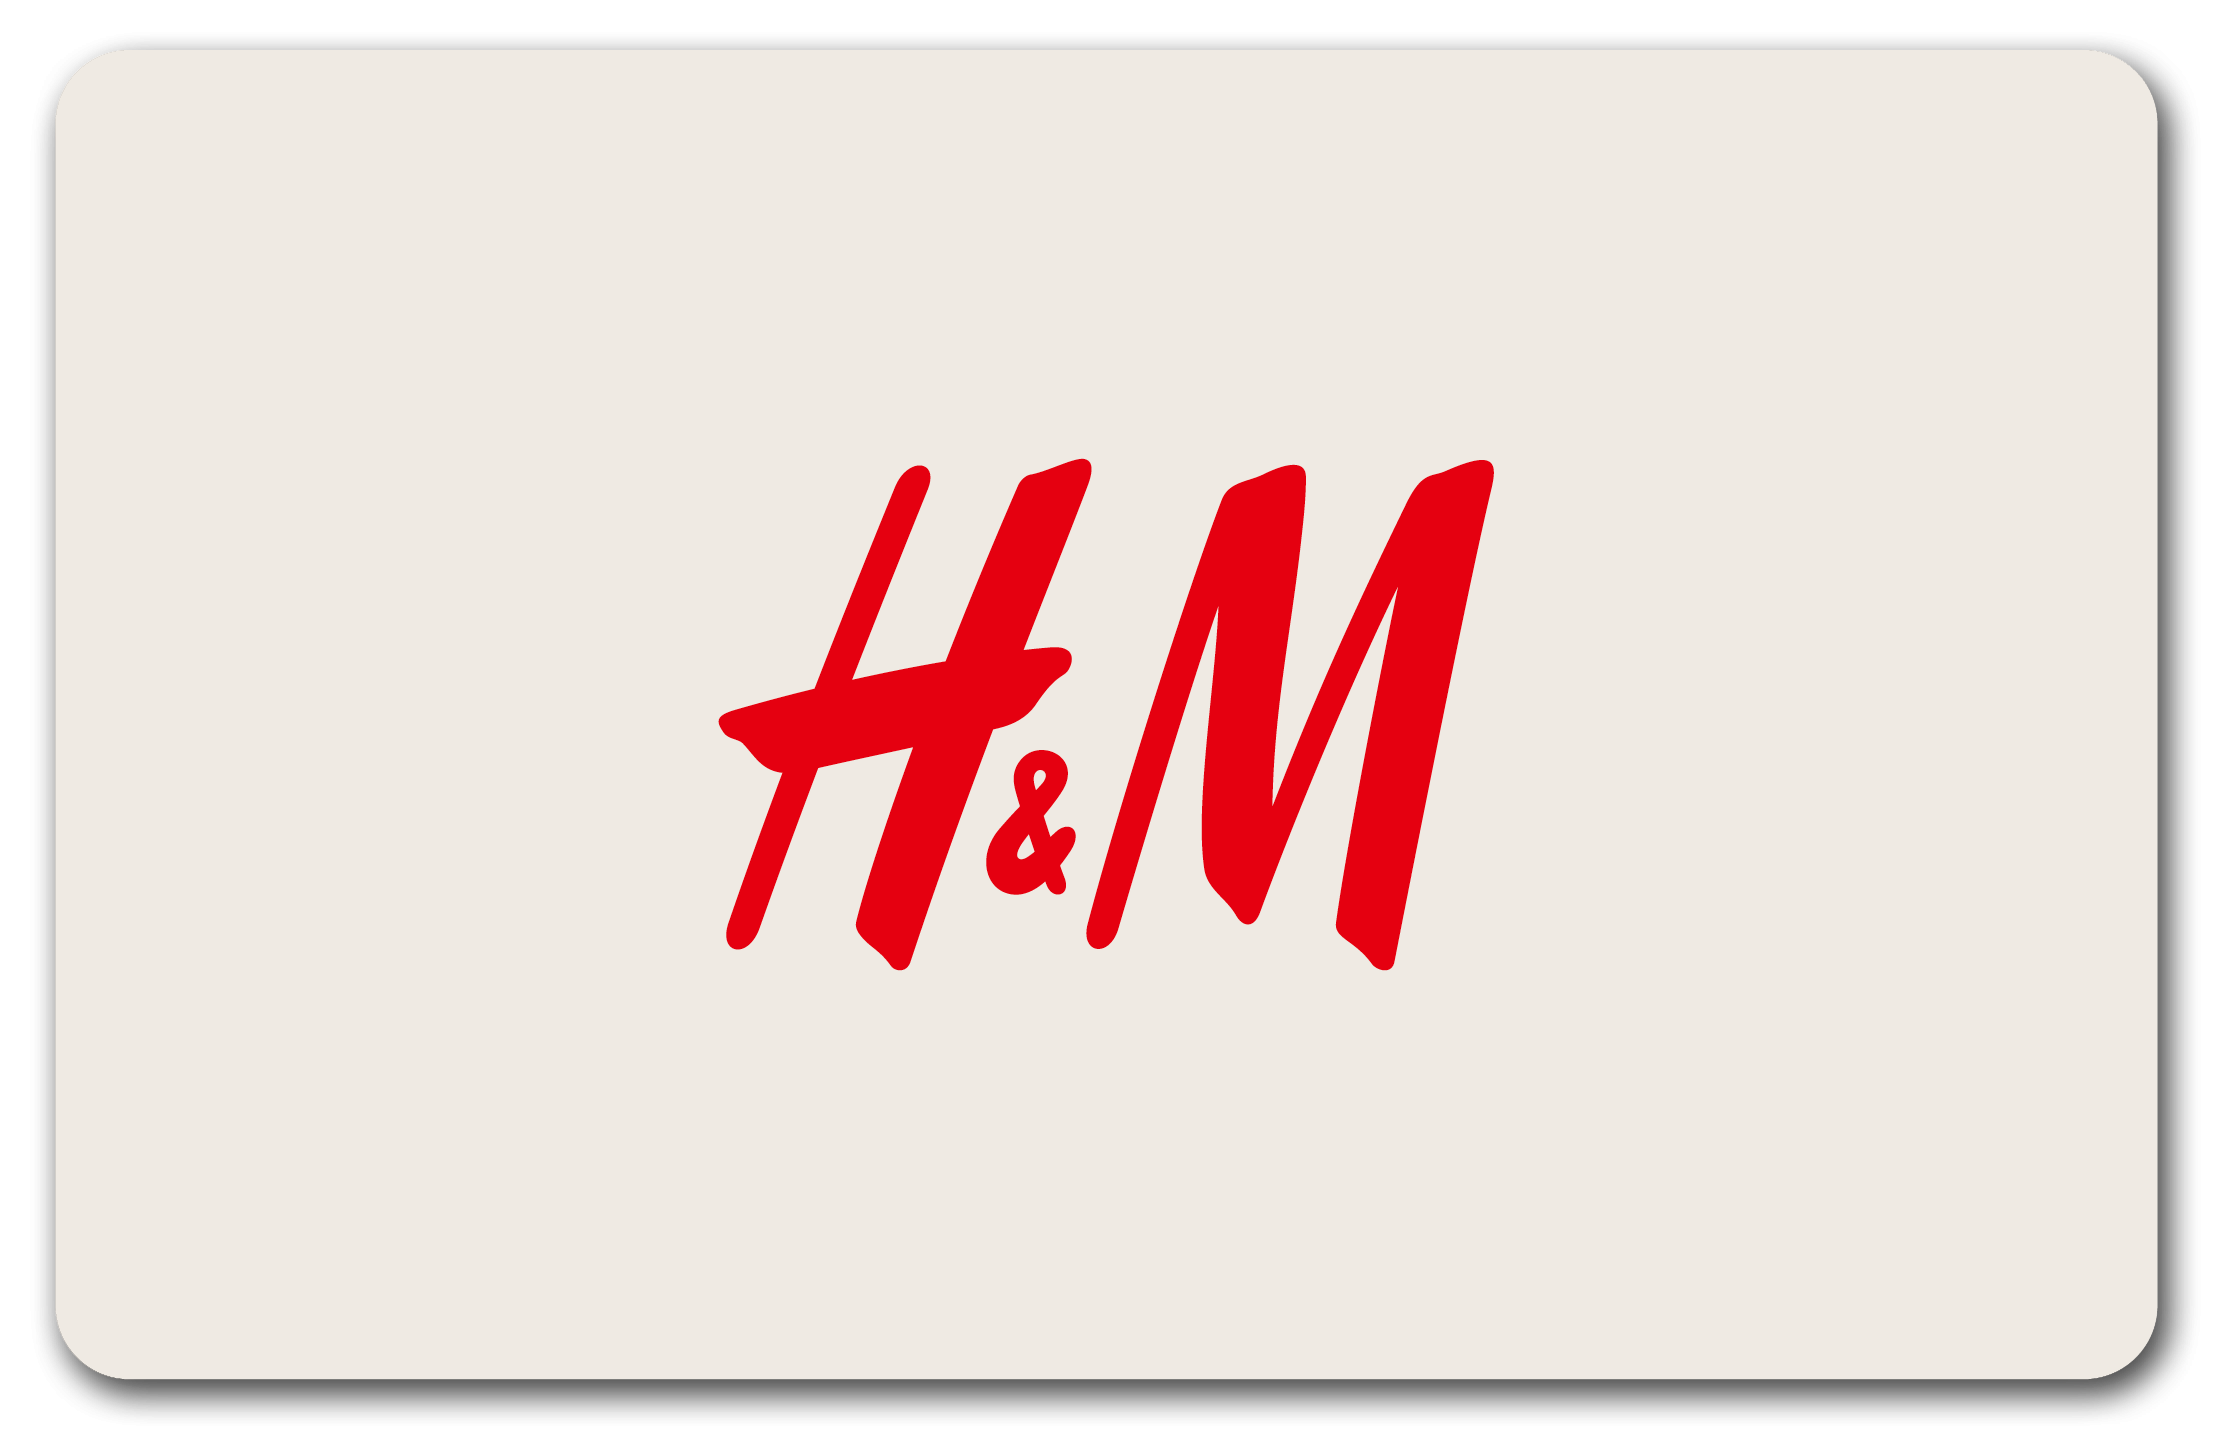 H&M Béziers